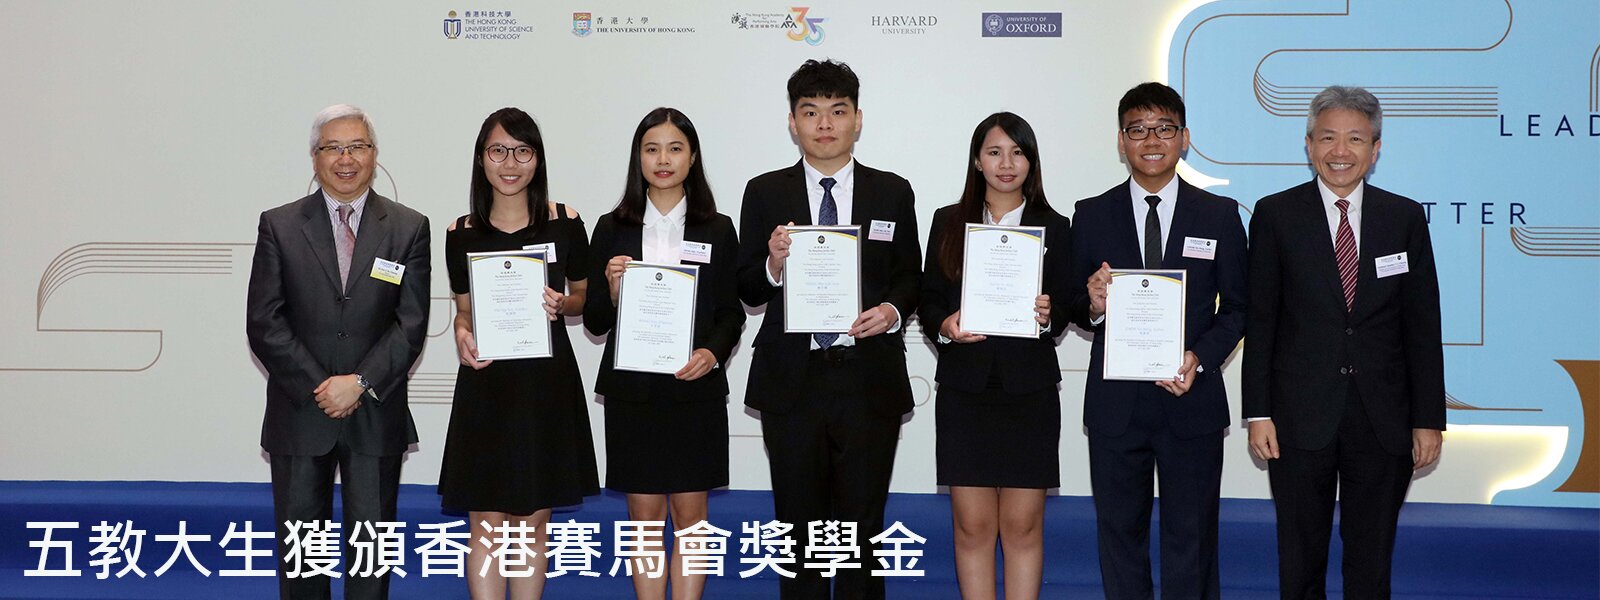 五教大生獲頒香港賽馬會獎學金